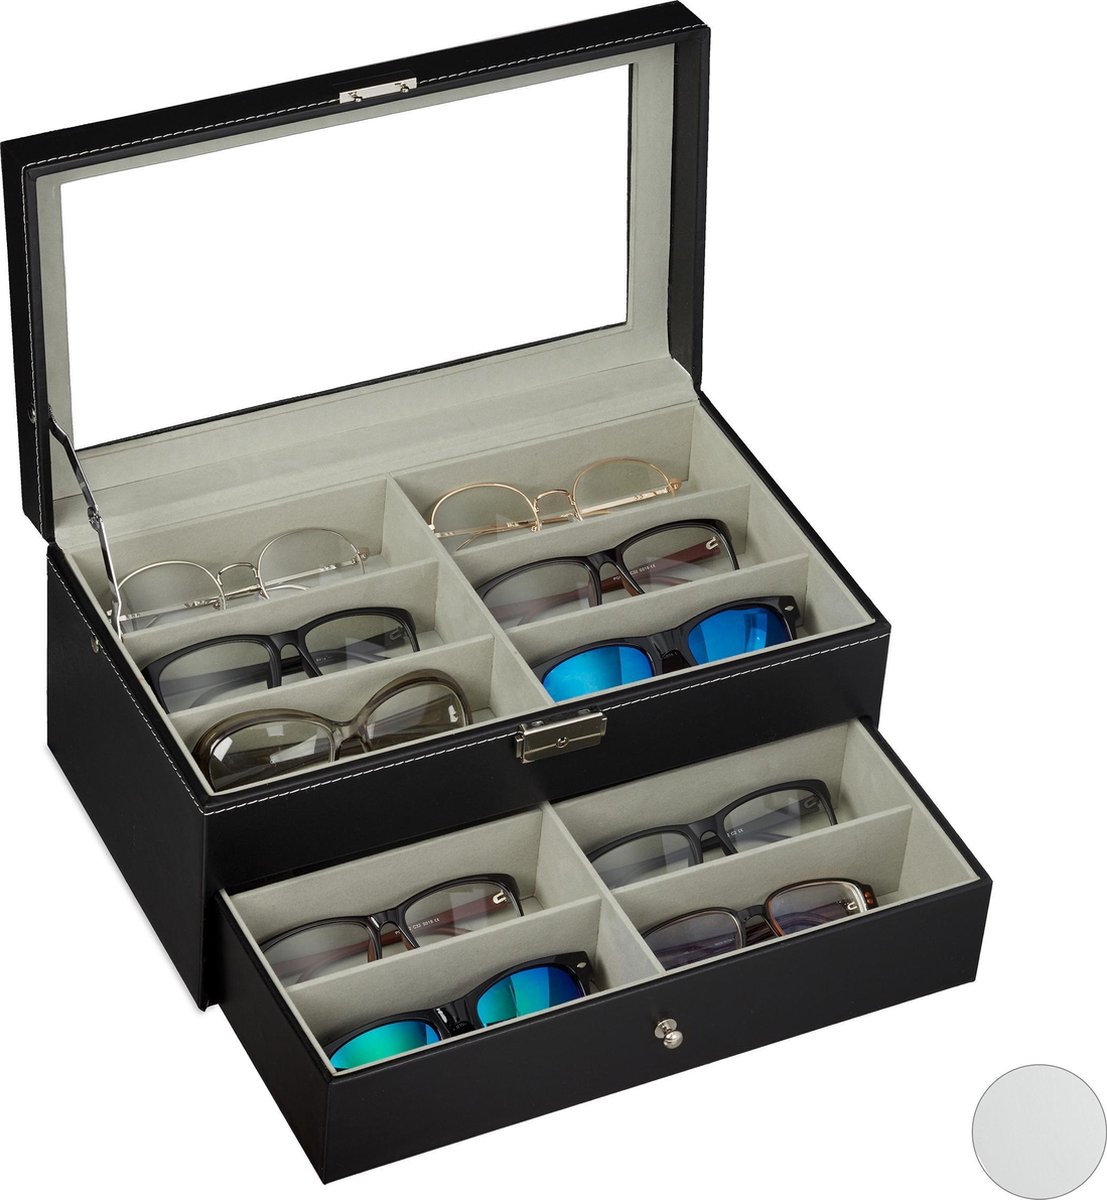 Relaxdays brillendoos voor 12 brillen - brillen opbergdoos - brillen display - met lade - zwart